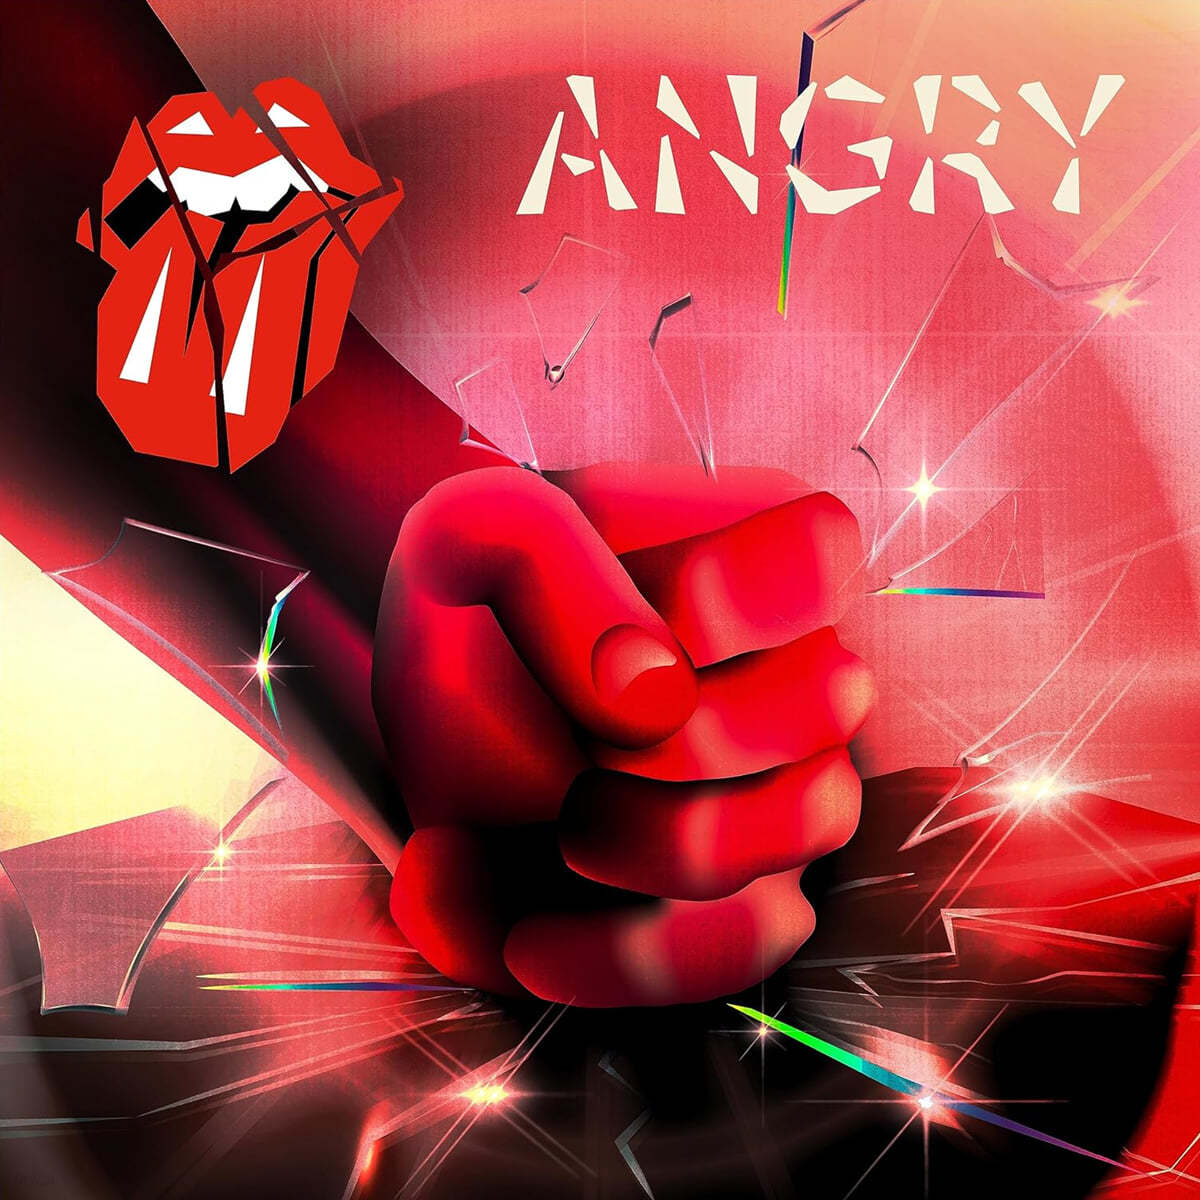 The Rolling Stones (롤링 스톤즈) - Angry [10인치 Vinyl]